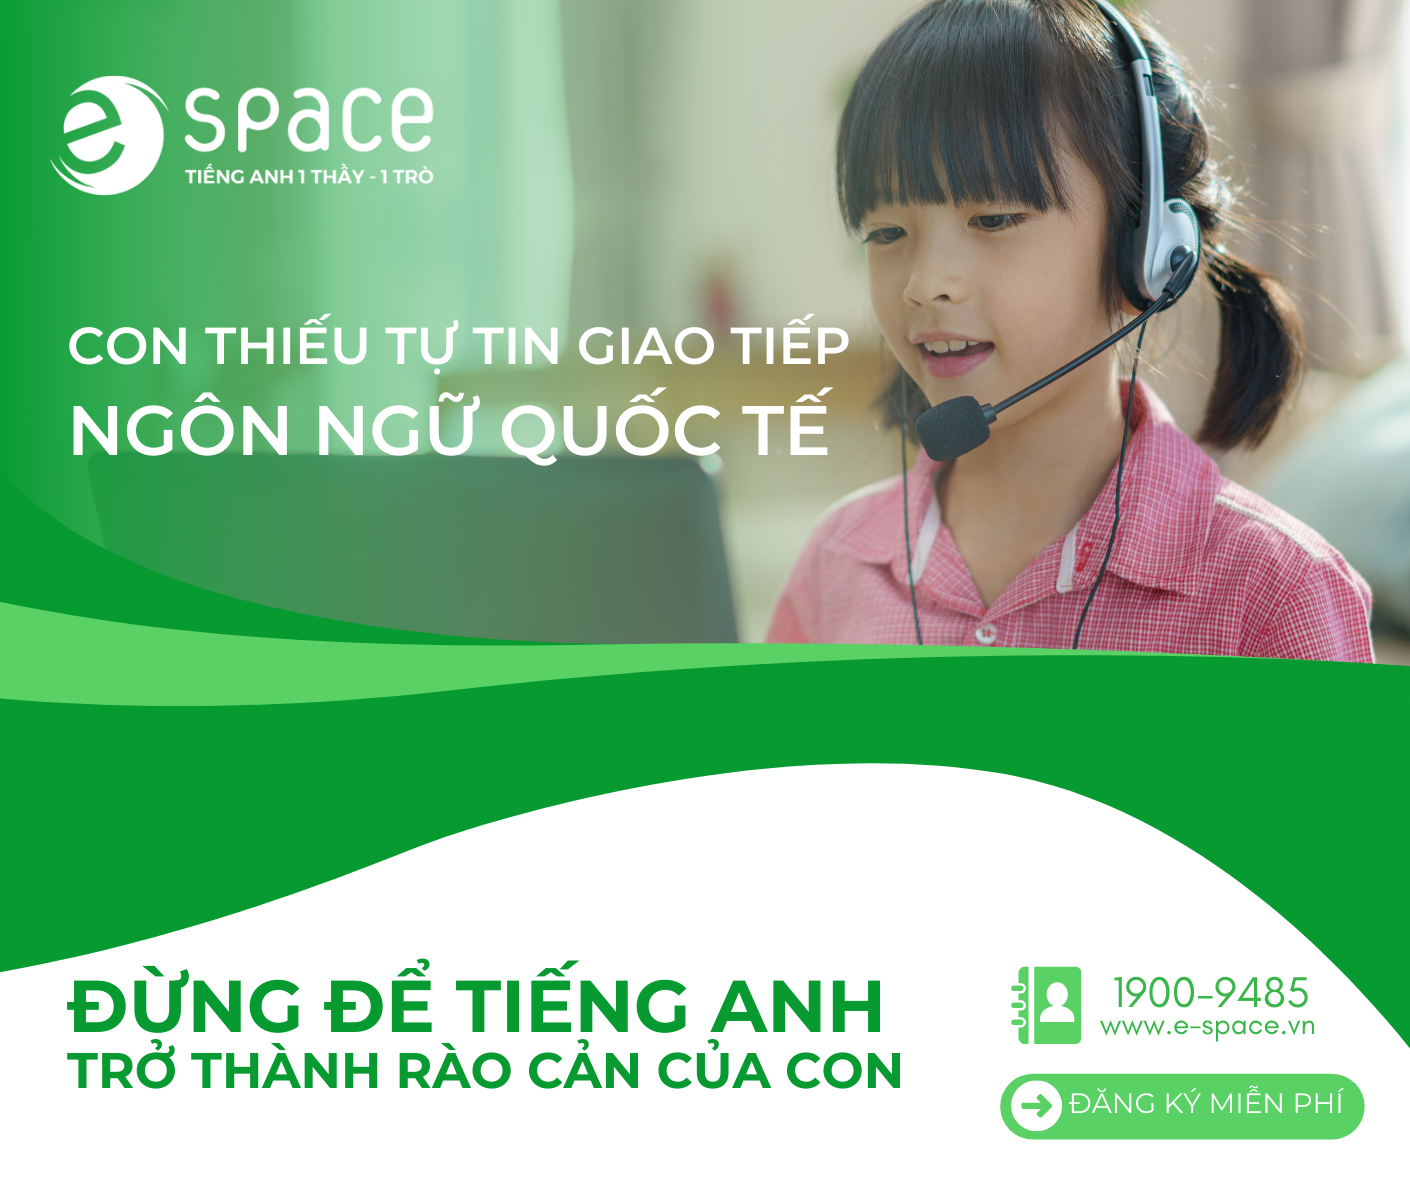 [e-space.vn] Khóa học online 1 kèm 1 - Tiếng Anh cho trẻ em